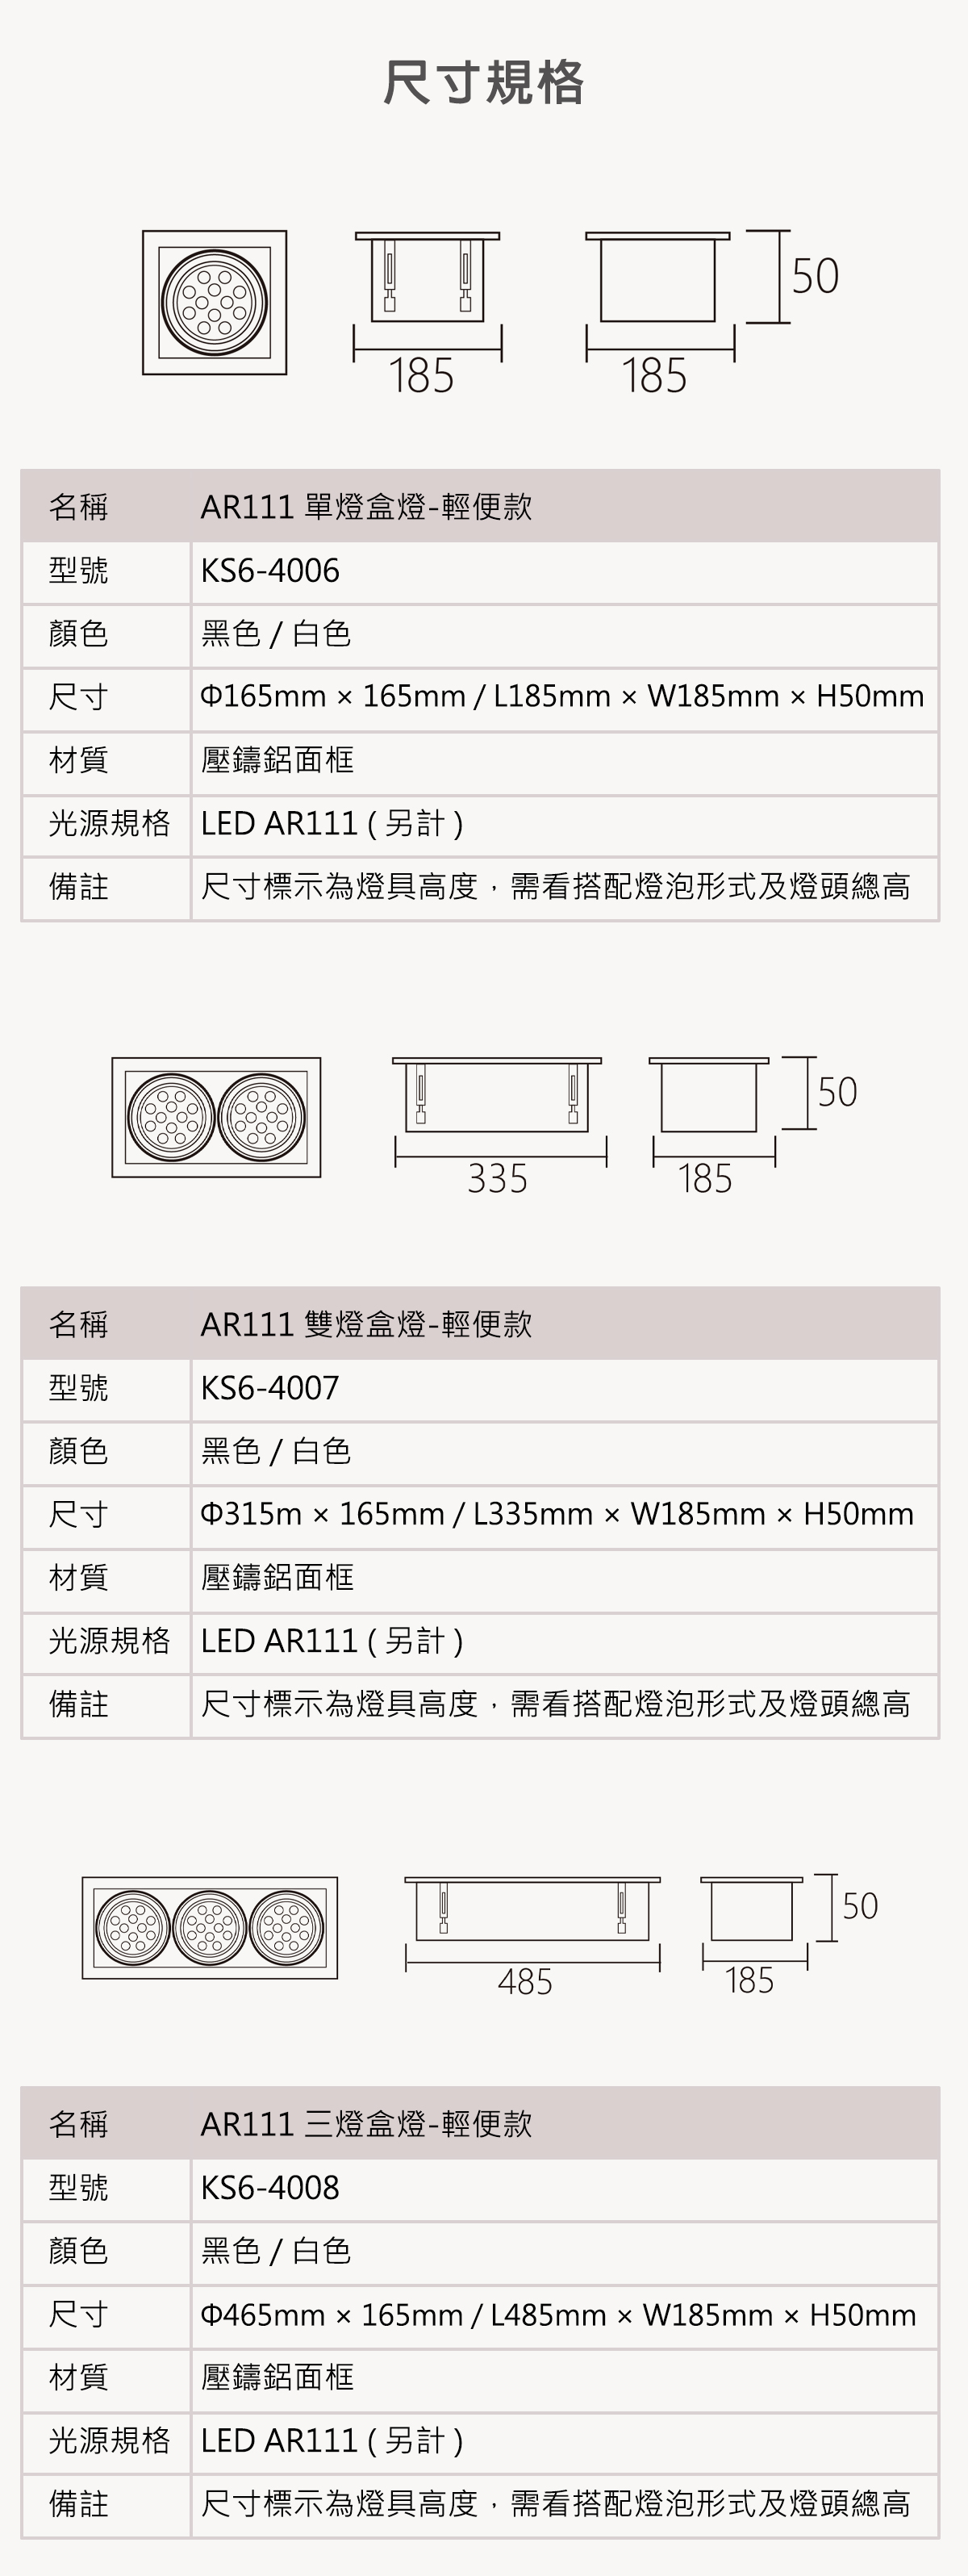 【KAO'S】AR111 輕便型盒燈 1燈 2燈 3燈 需搭配AR111燈泡(另計)